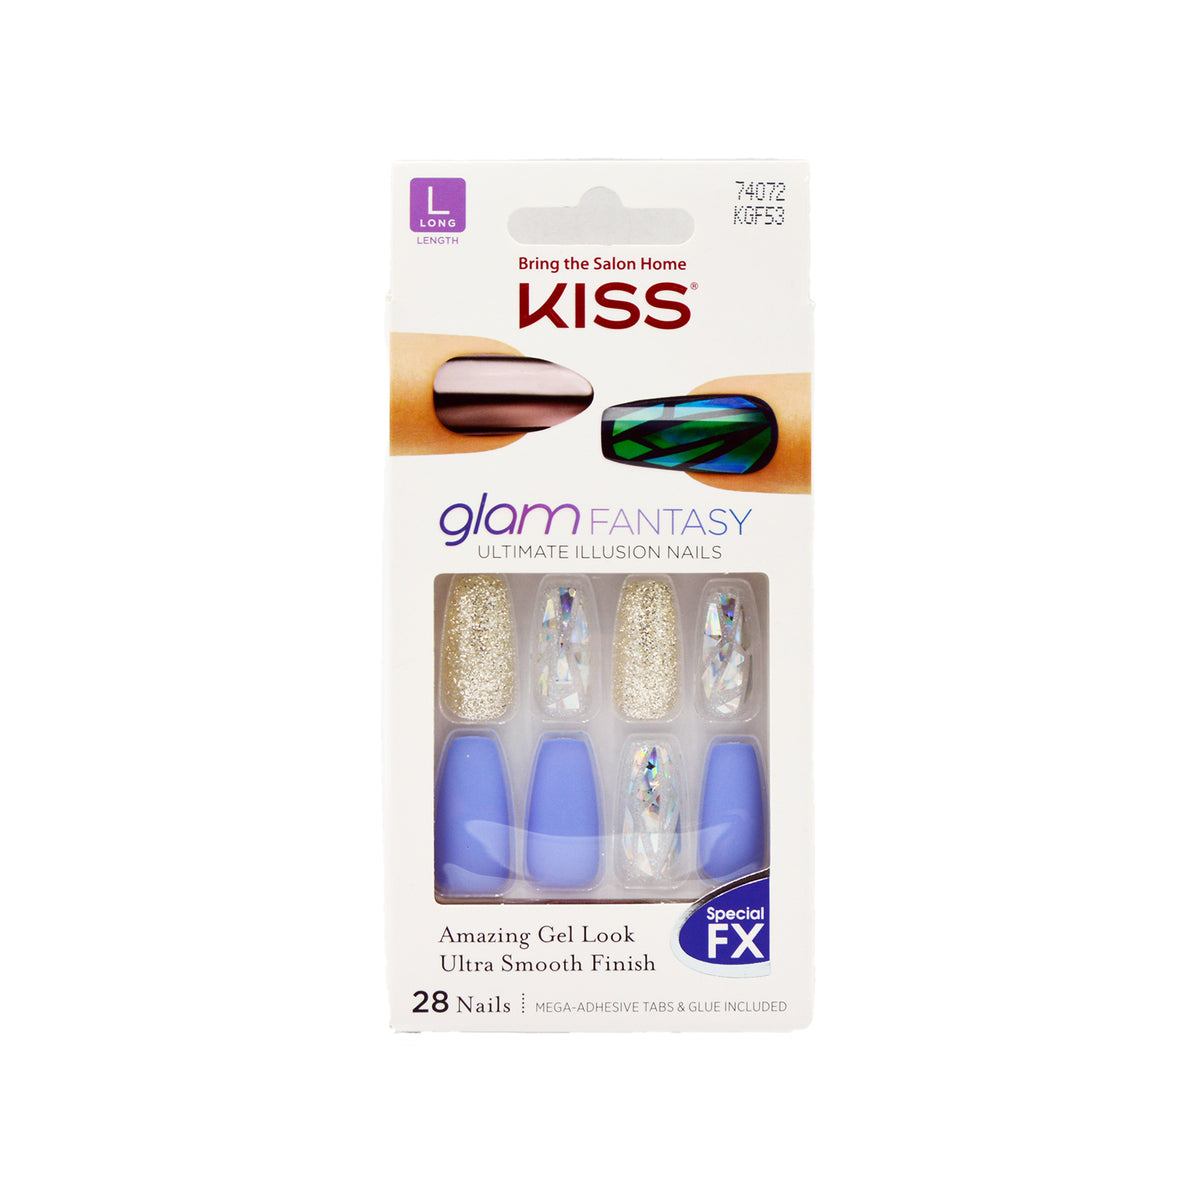 KISS - Glam Fantasy Ultimate Illusion Nails 28 | Hair Joy Beauty Supply